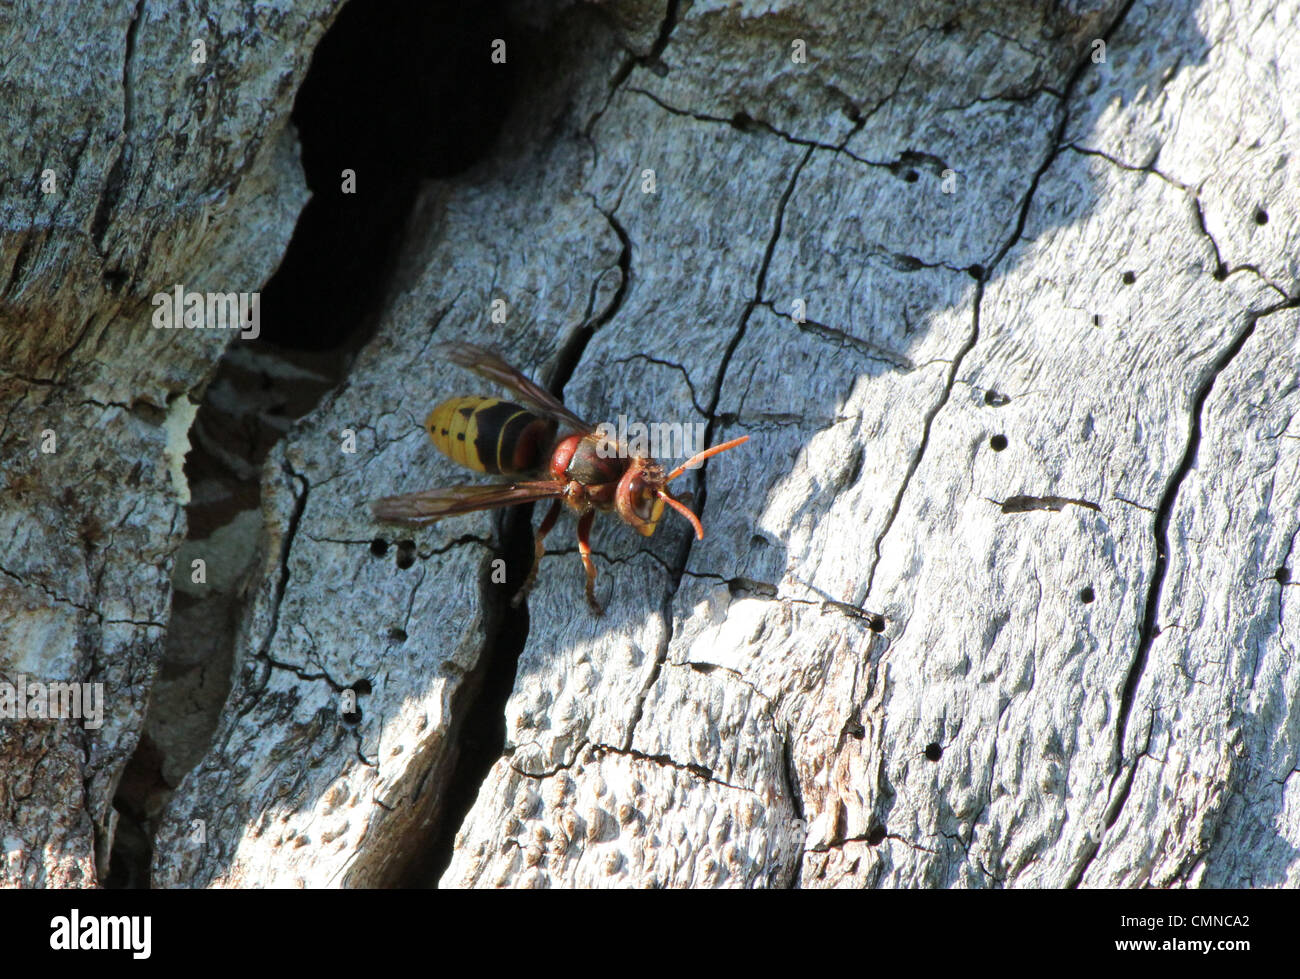 Wasp de sortir de son nid dans le bois mort Banque D'Images